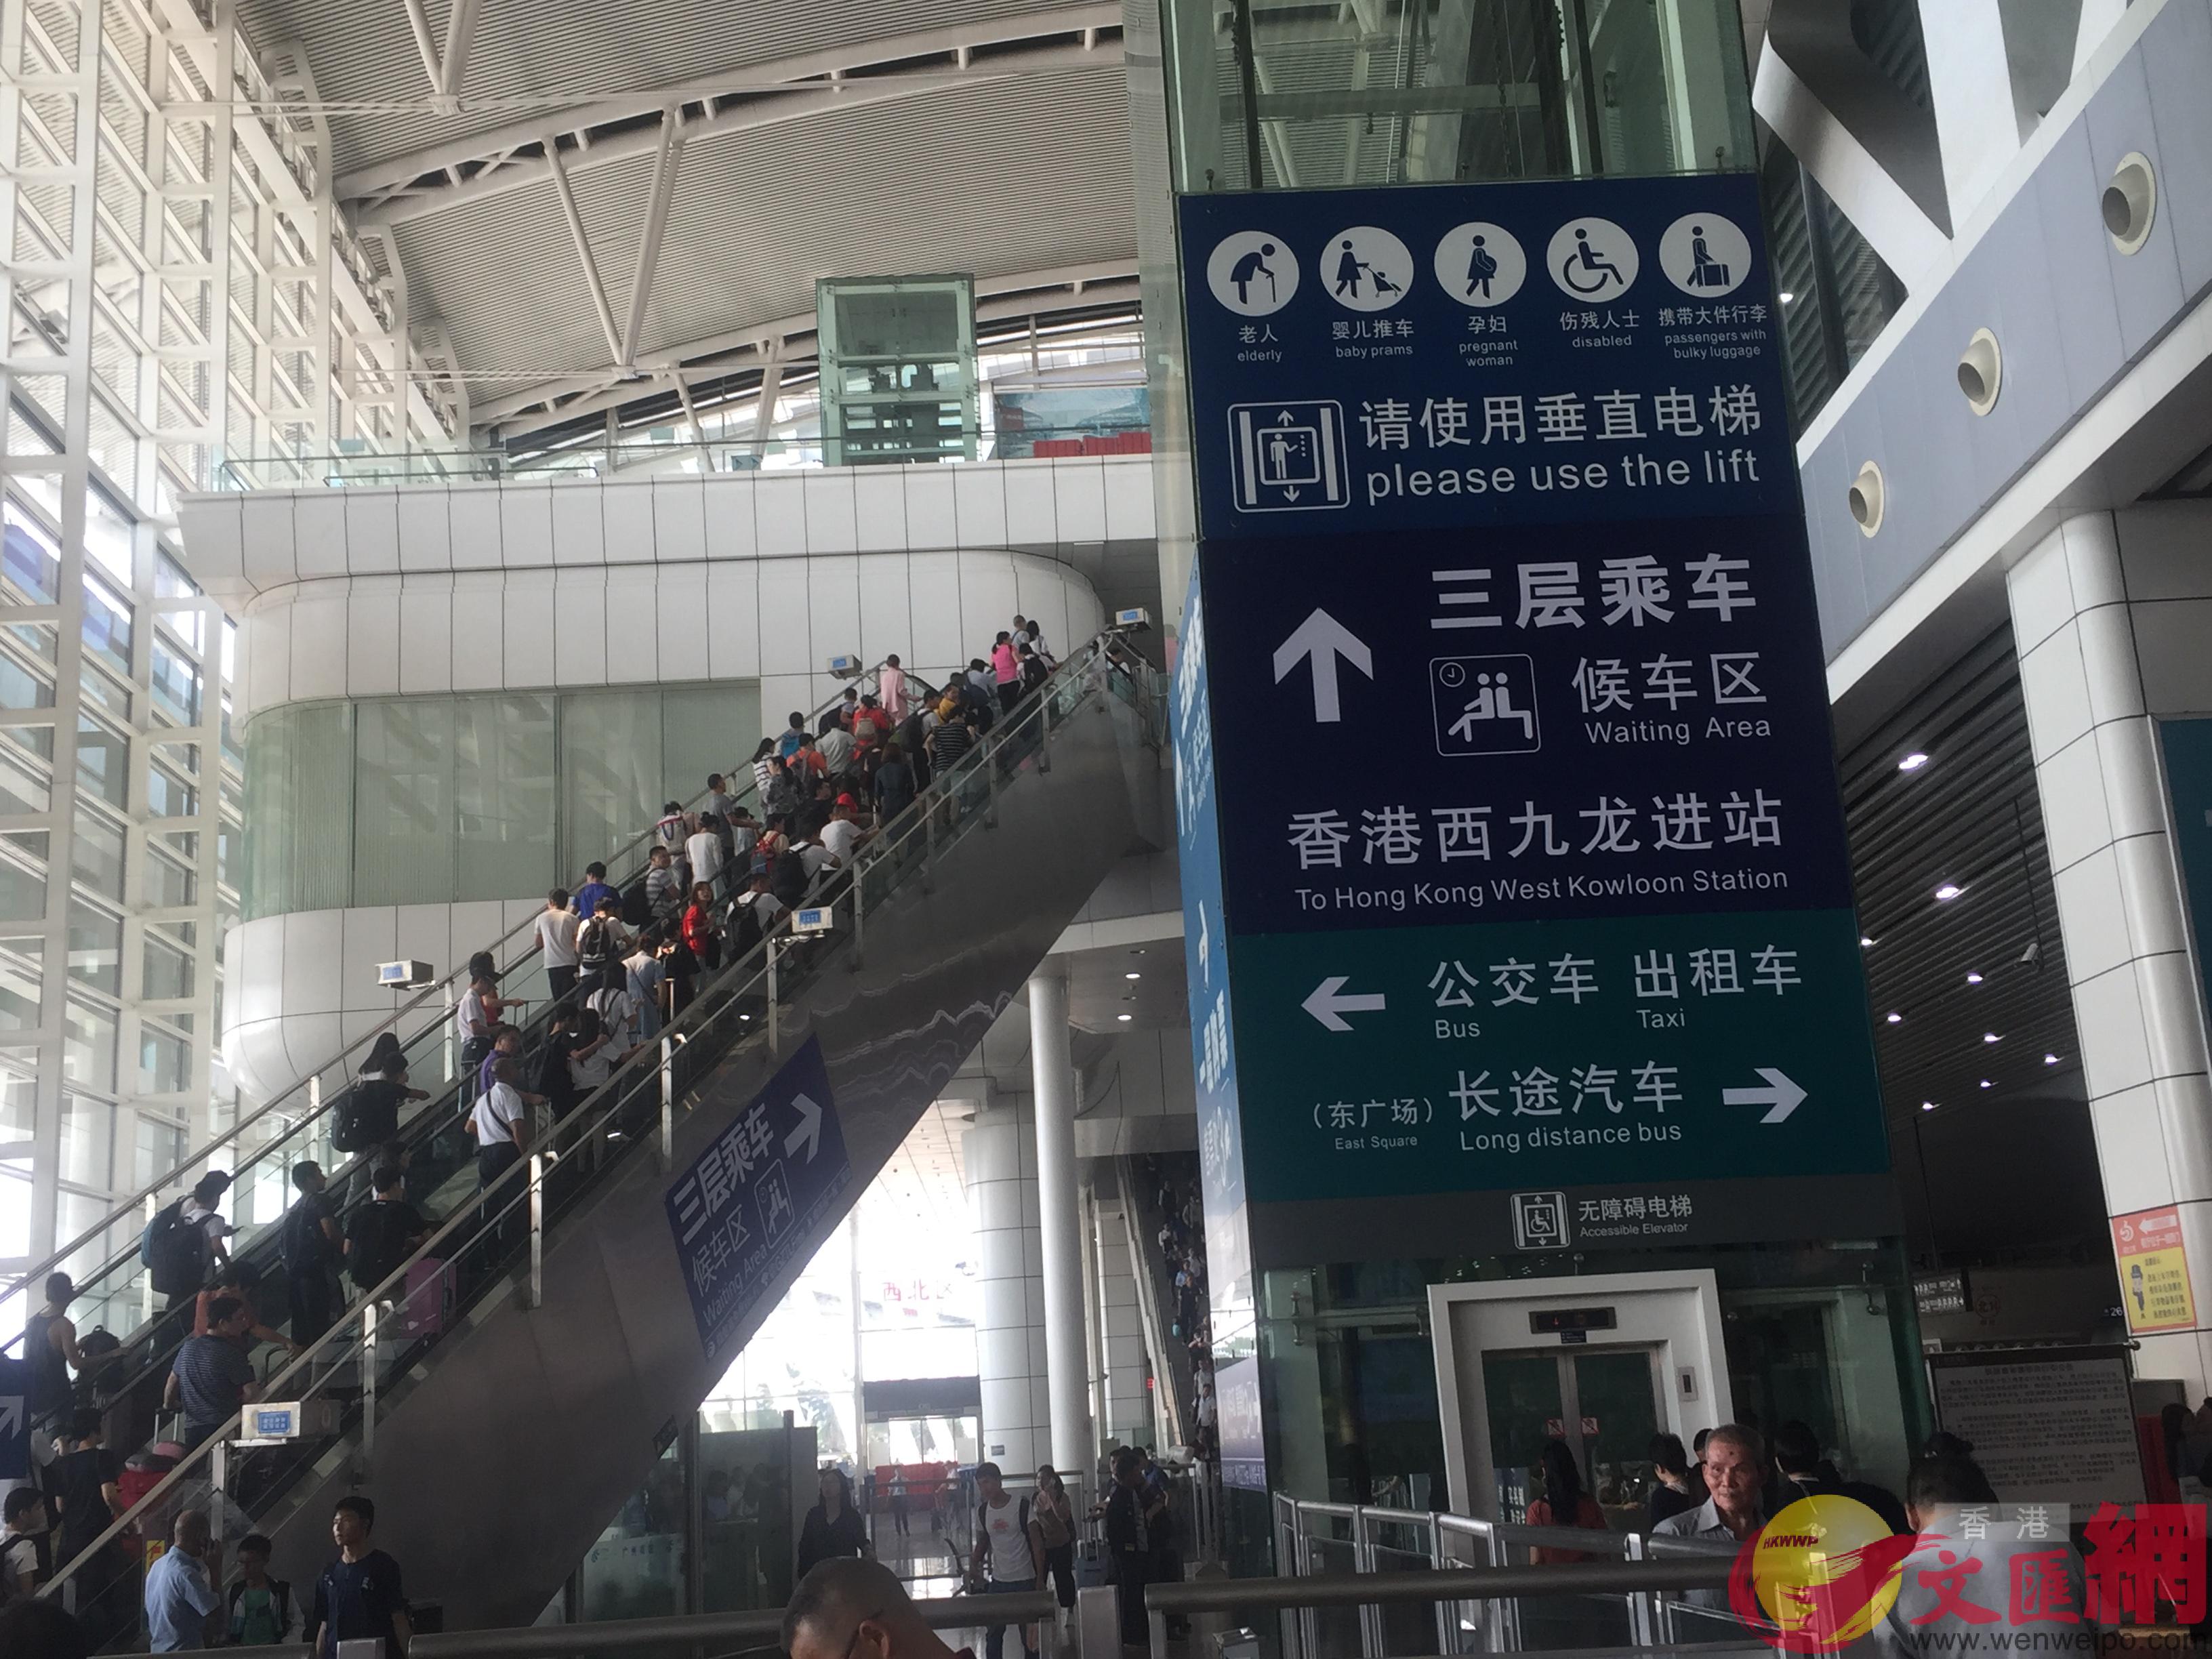 搭高鐵前往香港是不少內地居民的選擇]敖敏輝攝^